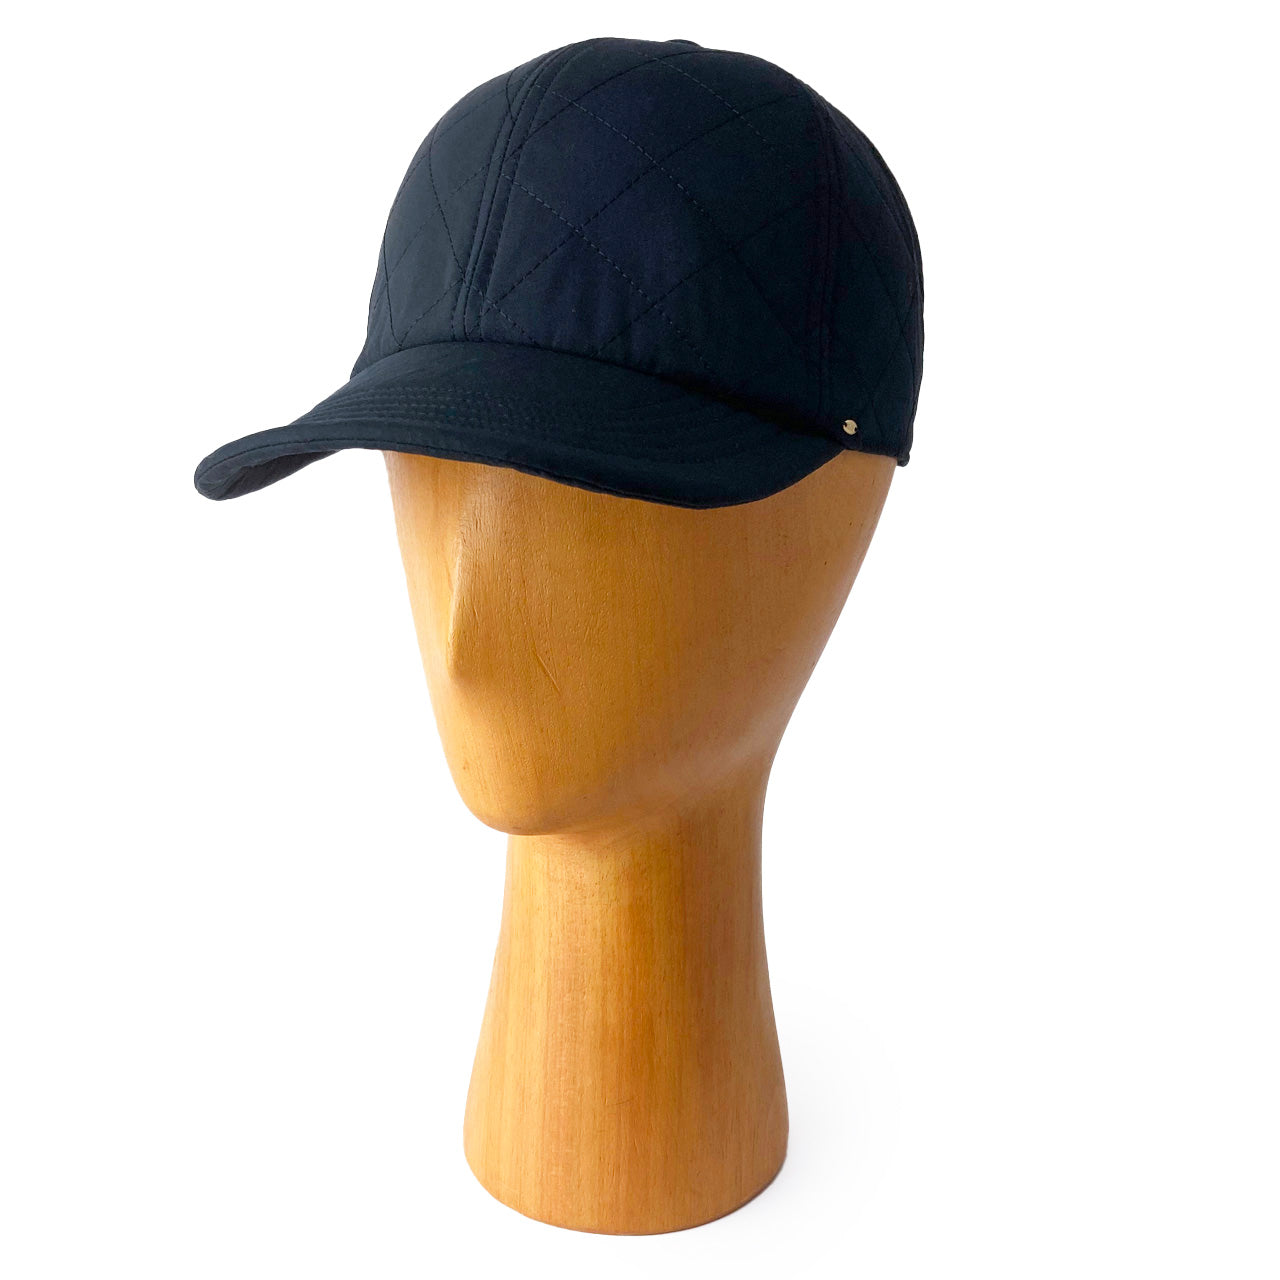 Zukin（ズキン）の商品一覧。水野ミリナーが手掛ける帽子ブランド